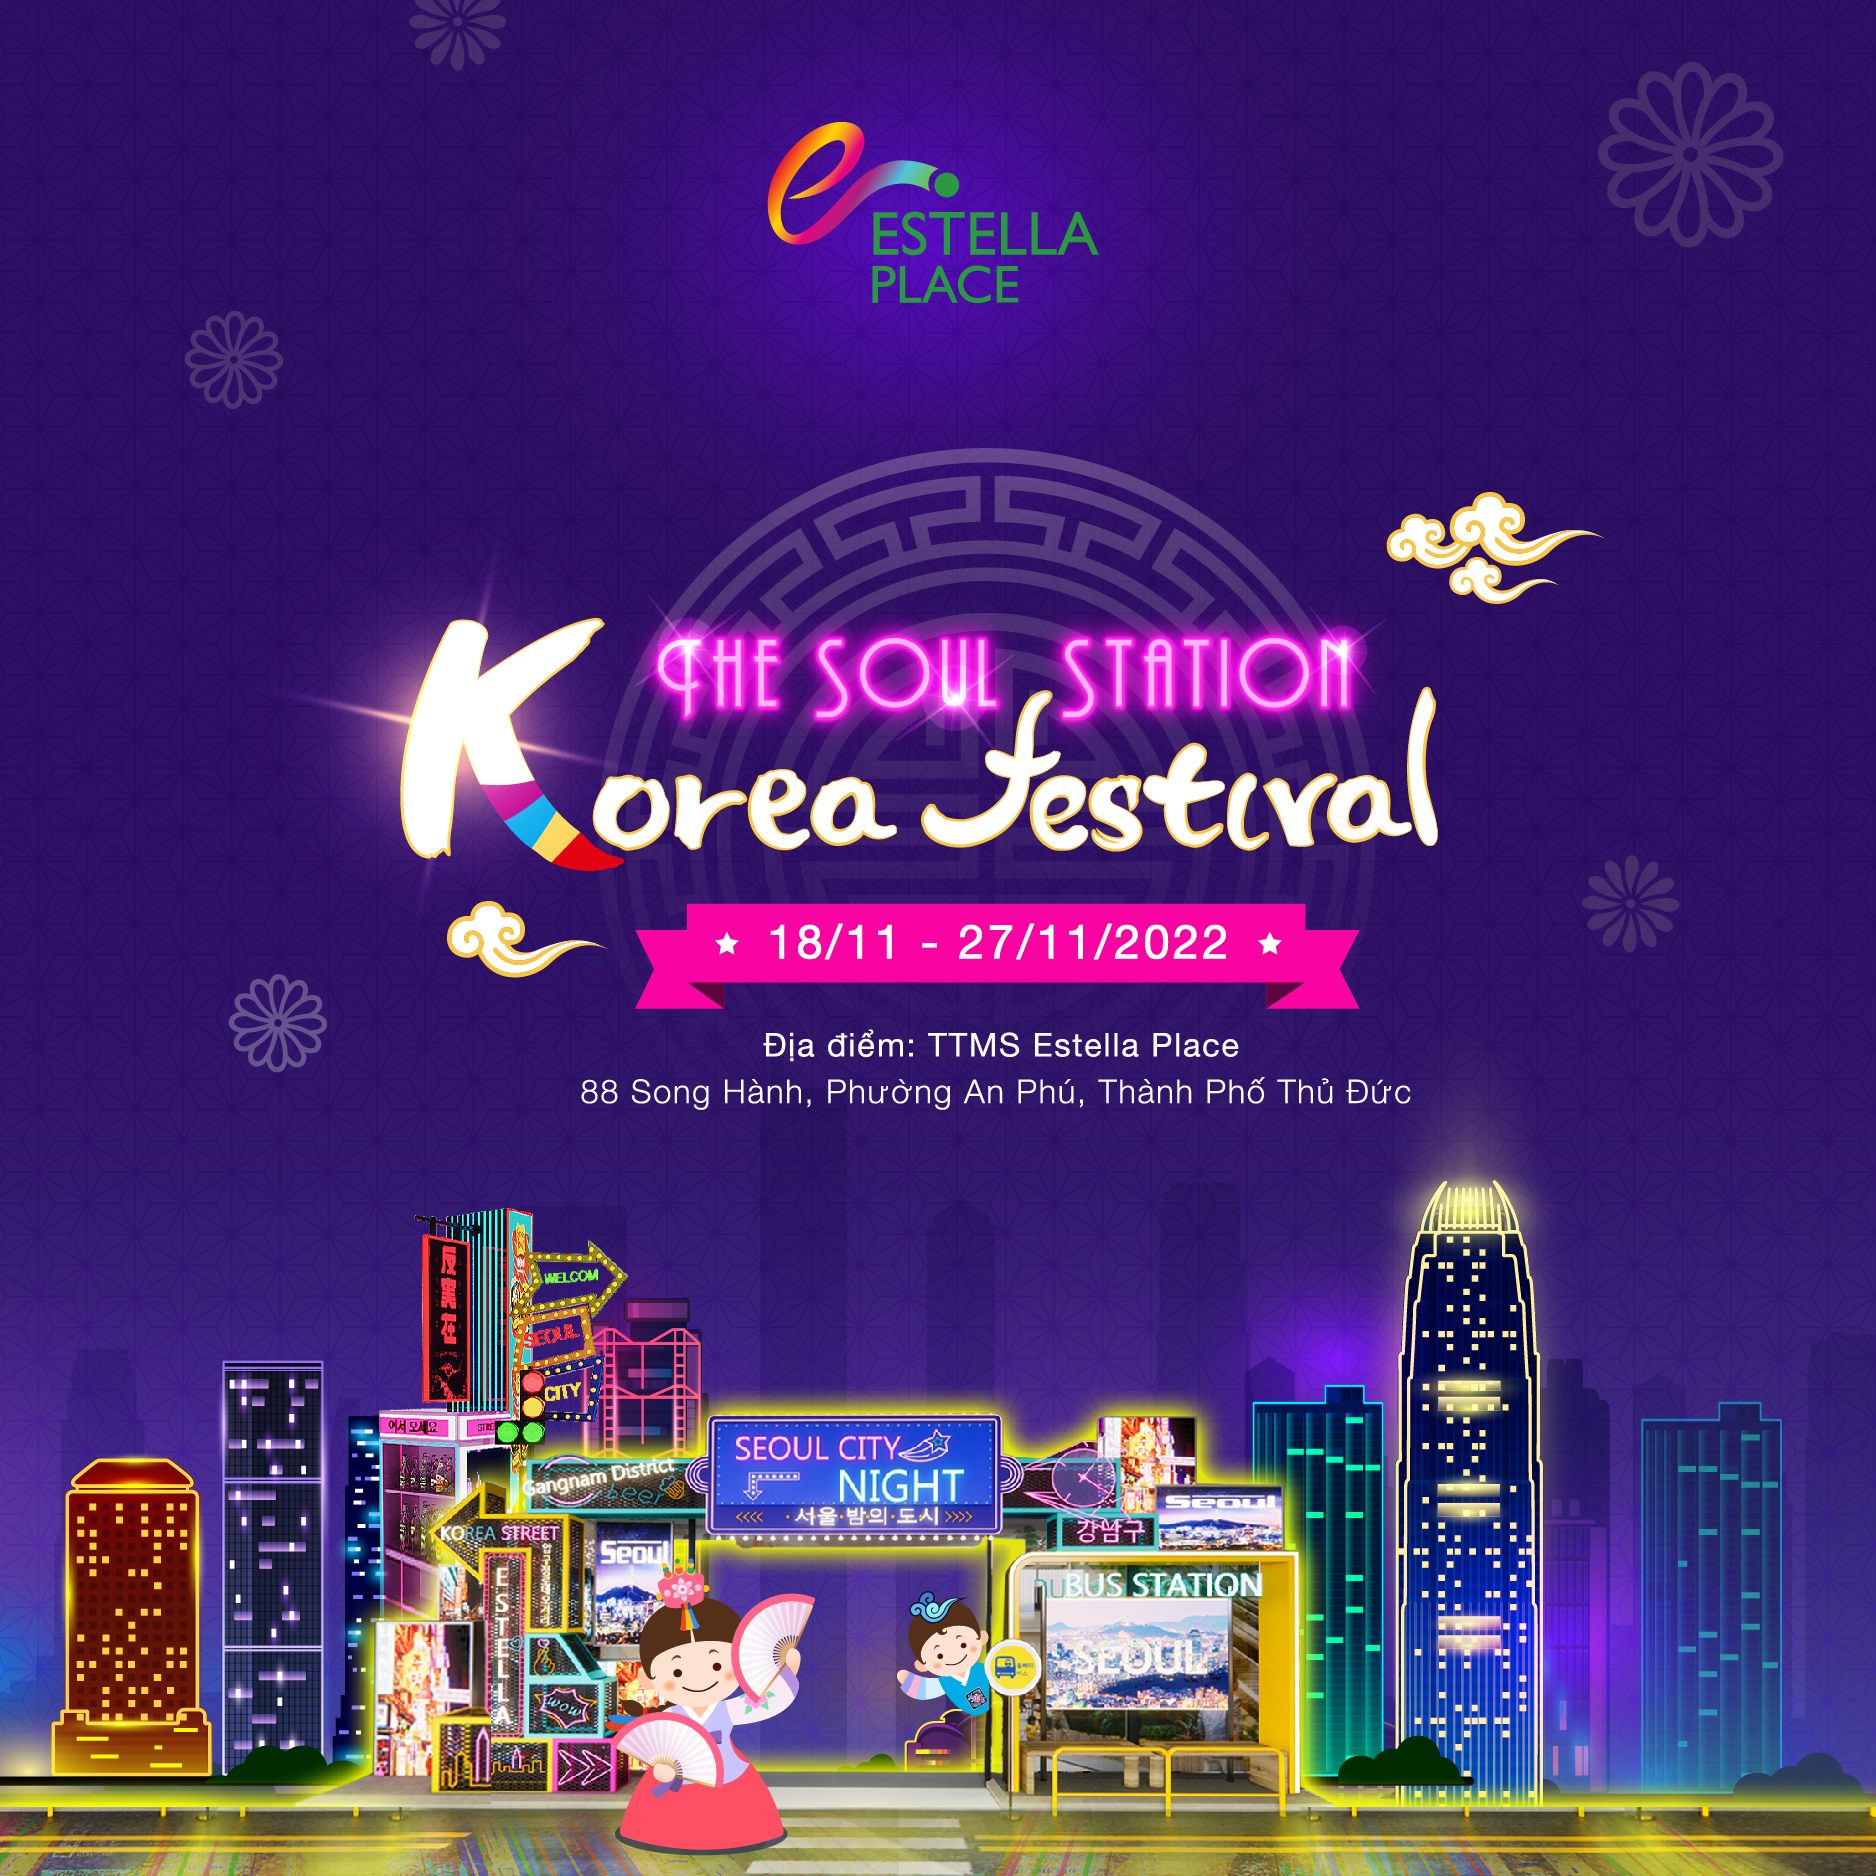 KOREA FESTIVAL – THE SOUL STATION